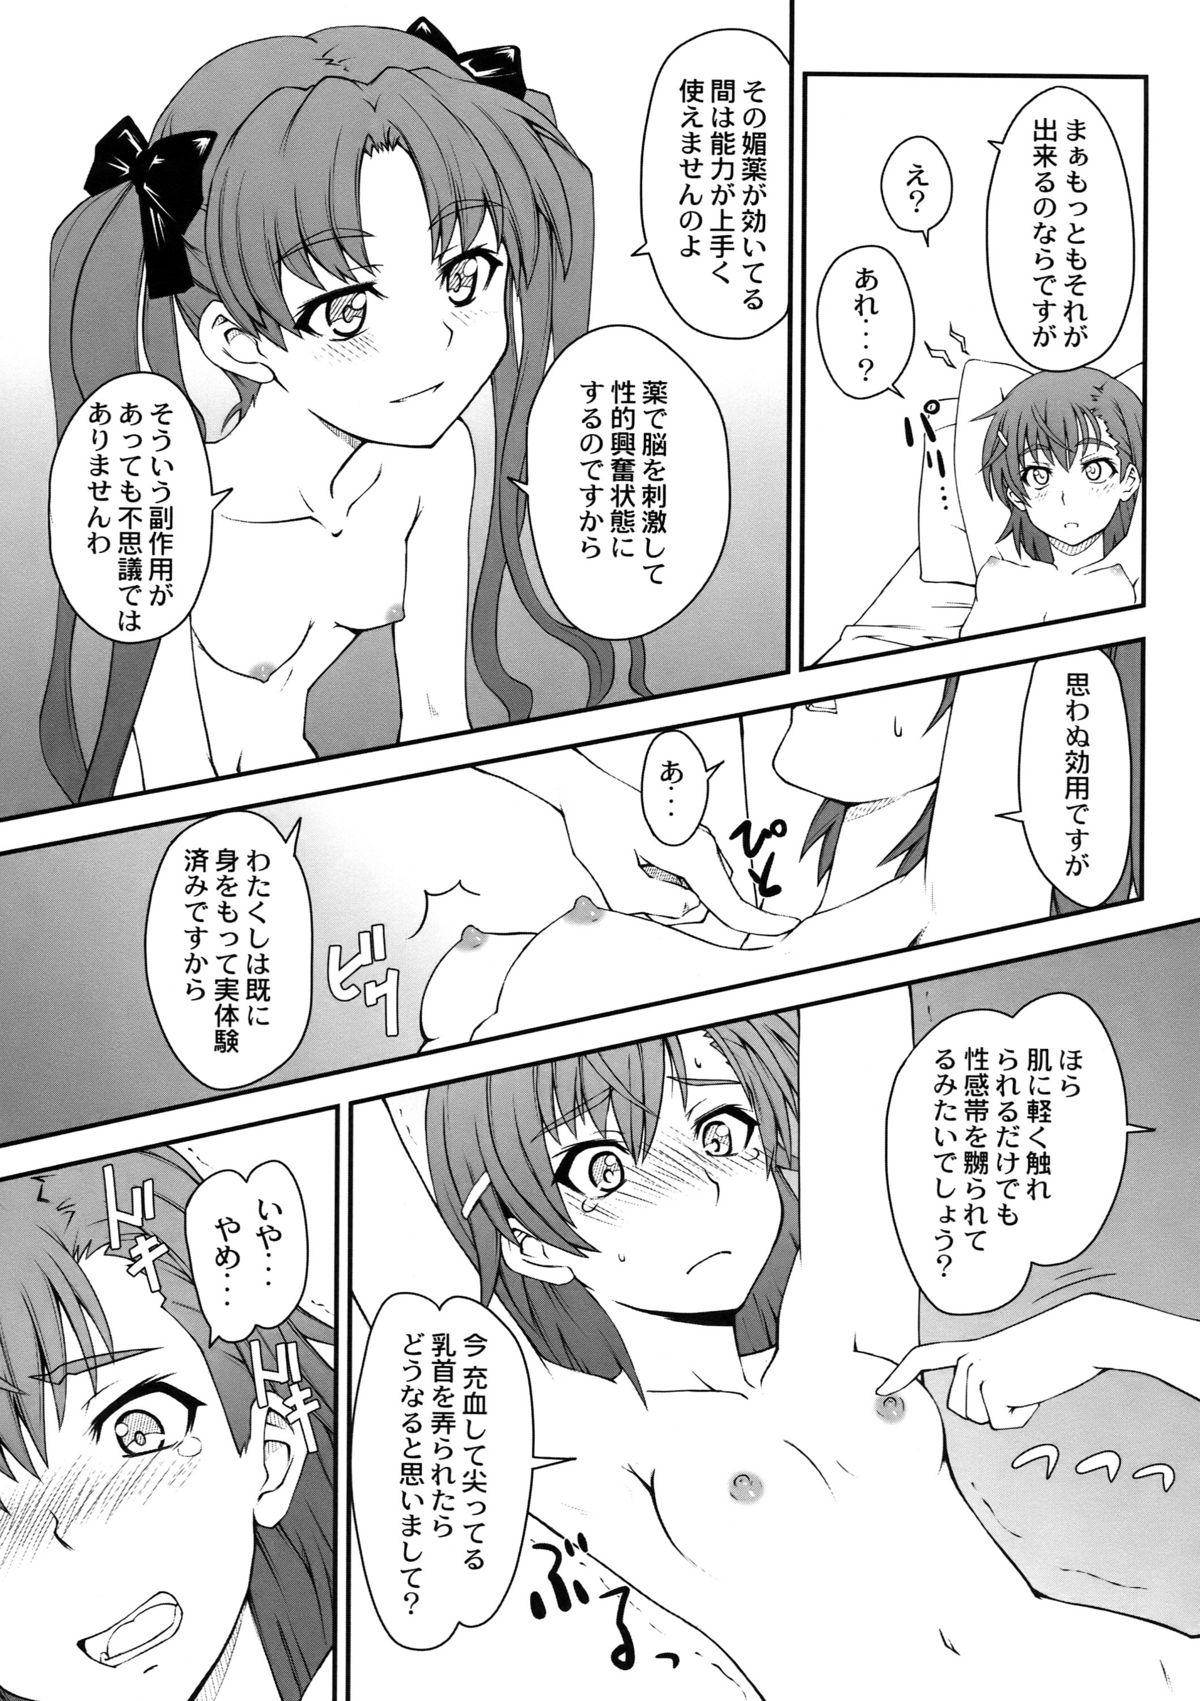 Bathroom Onnanoko Doushi toka Suki dakara! 2 - Toaru kagaku no railgun Spooning - Page 11